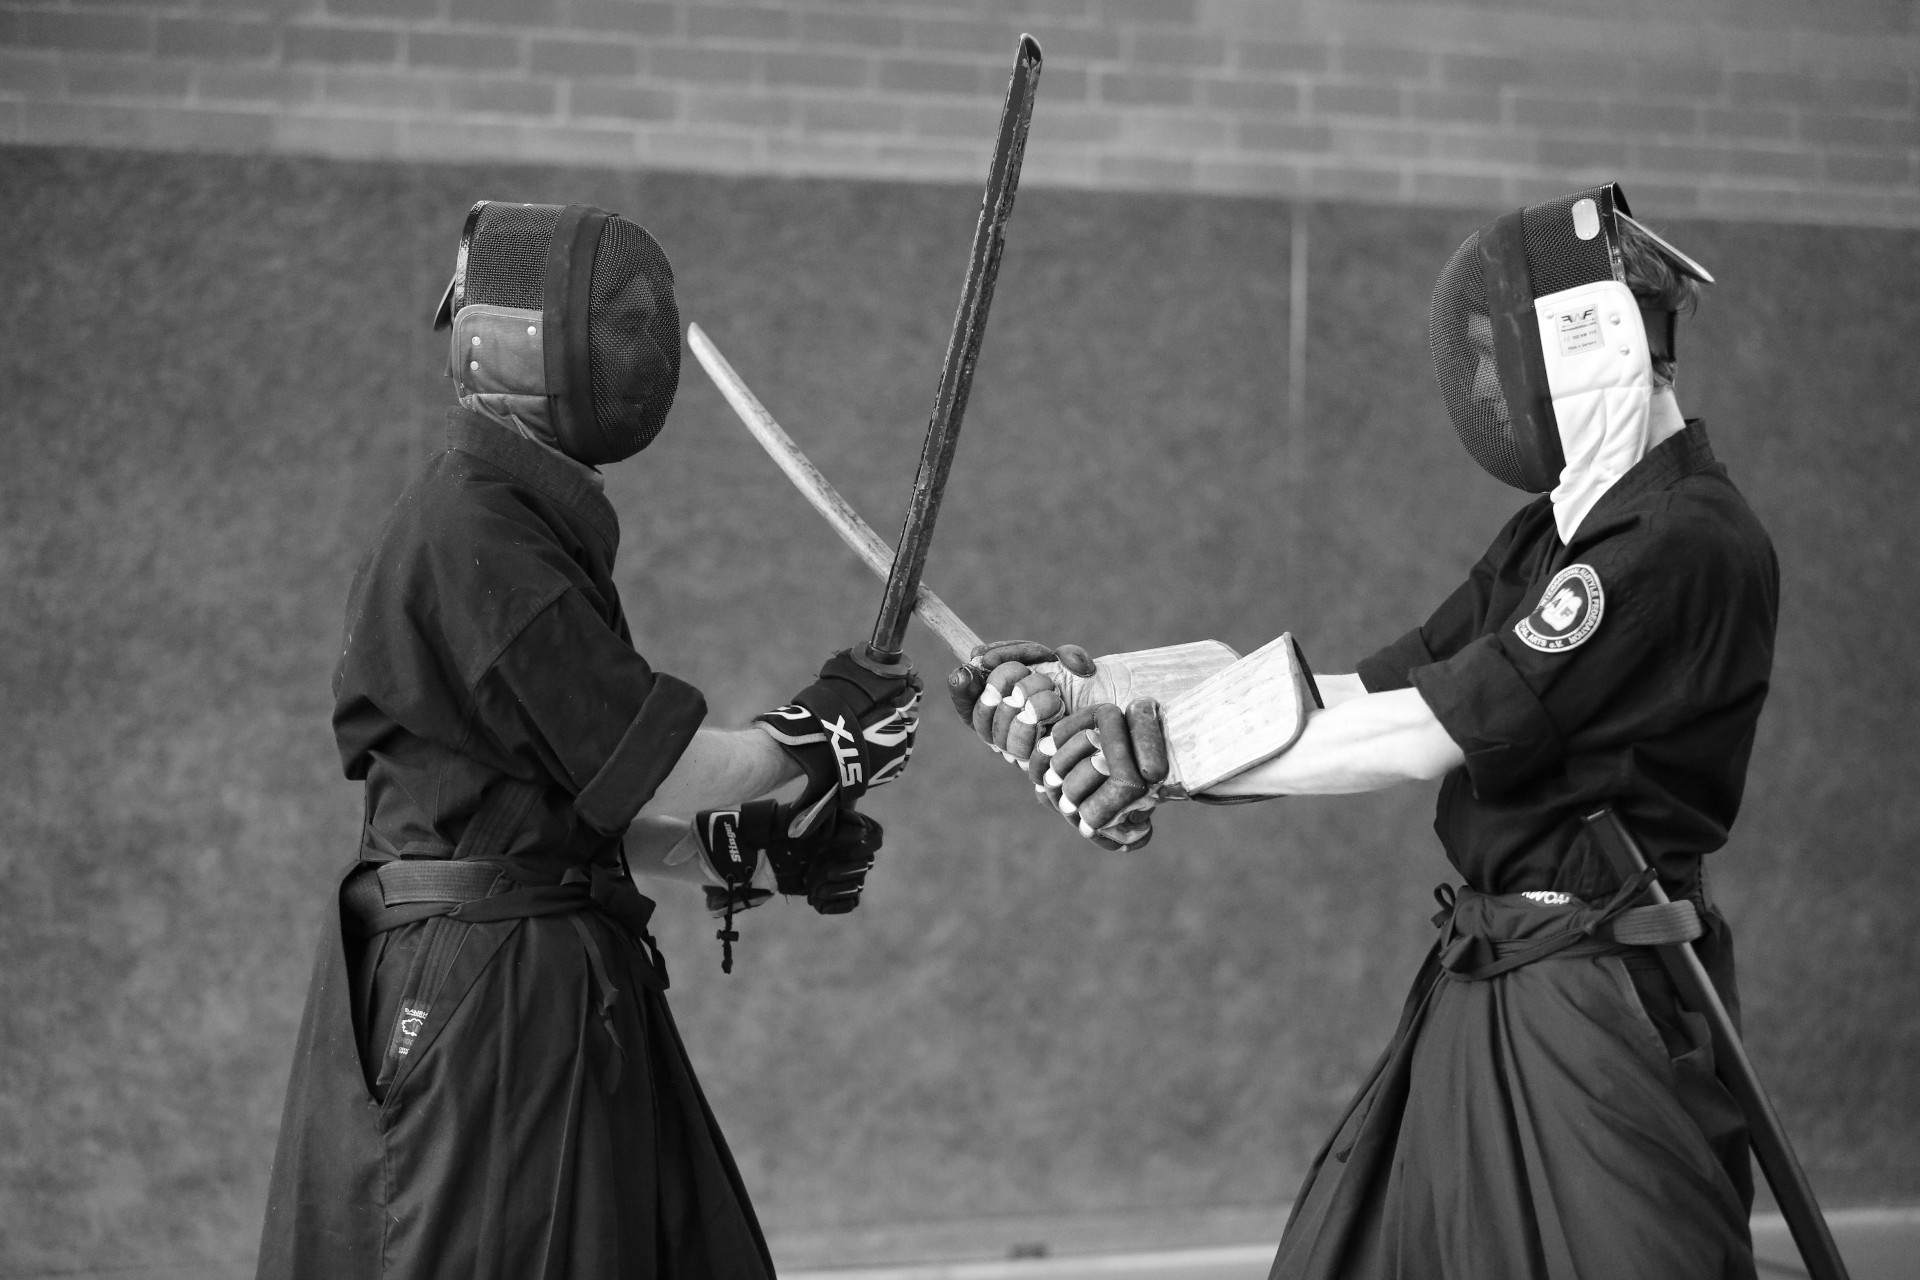 Zwei Personen mit Fechtmaske & Handschuhen kreuzen ihre Holzschwerter und stehen im Tsuba-Seriai